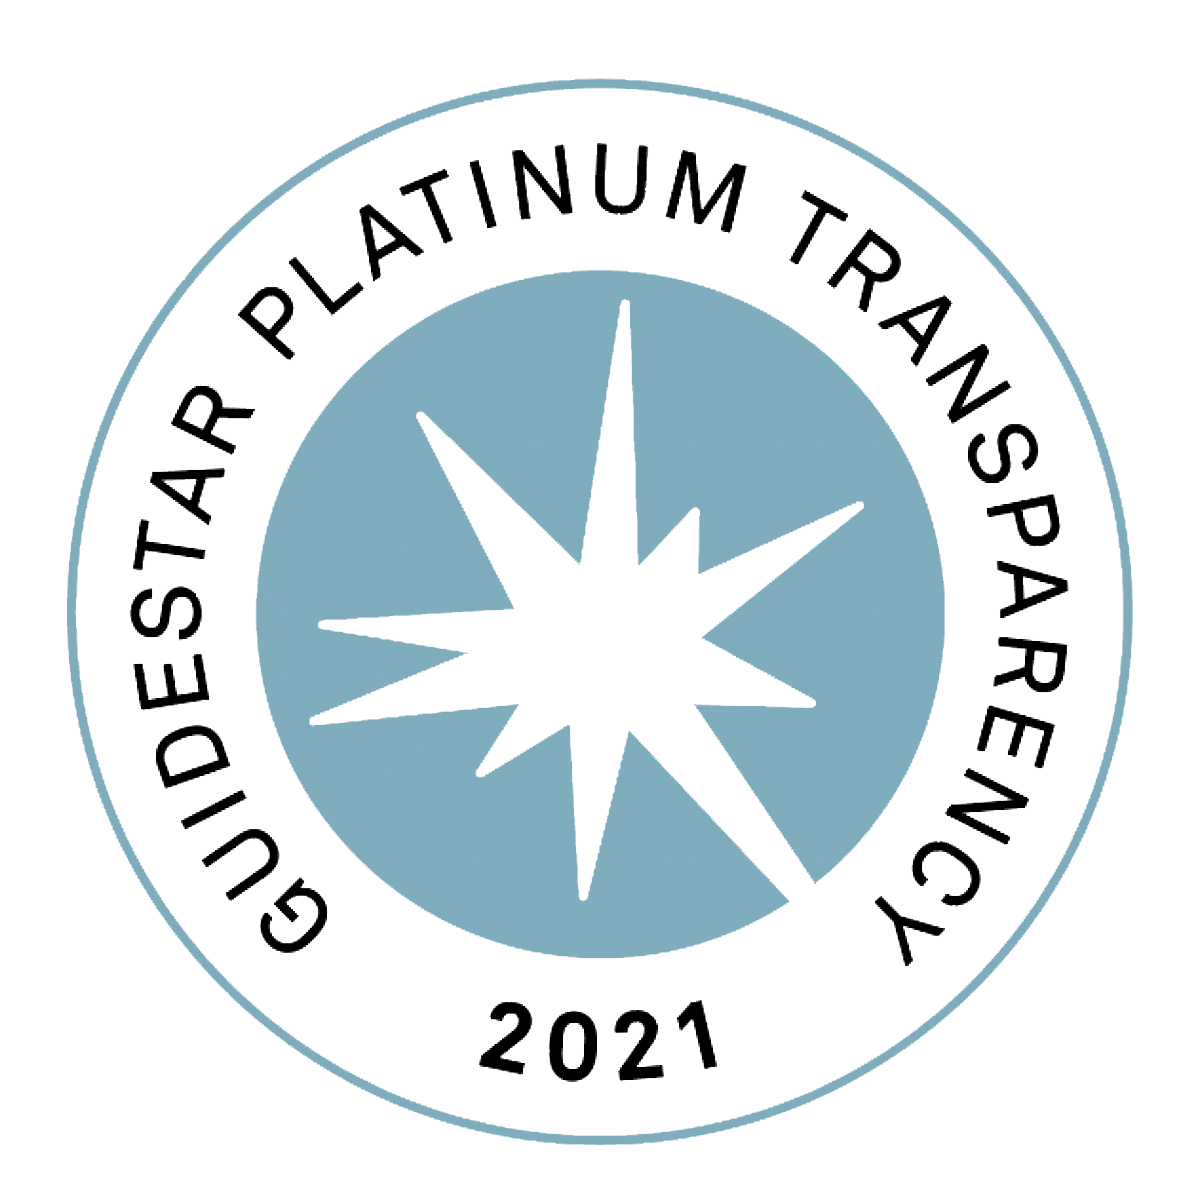 Guidstar Platium 2021